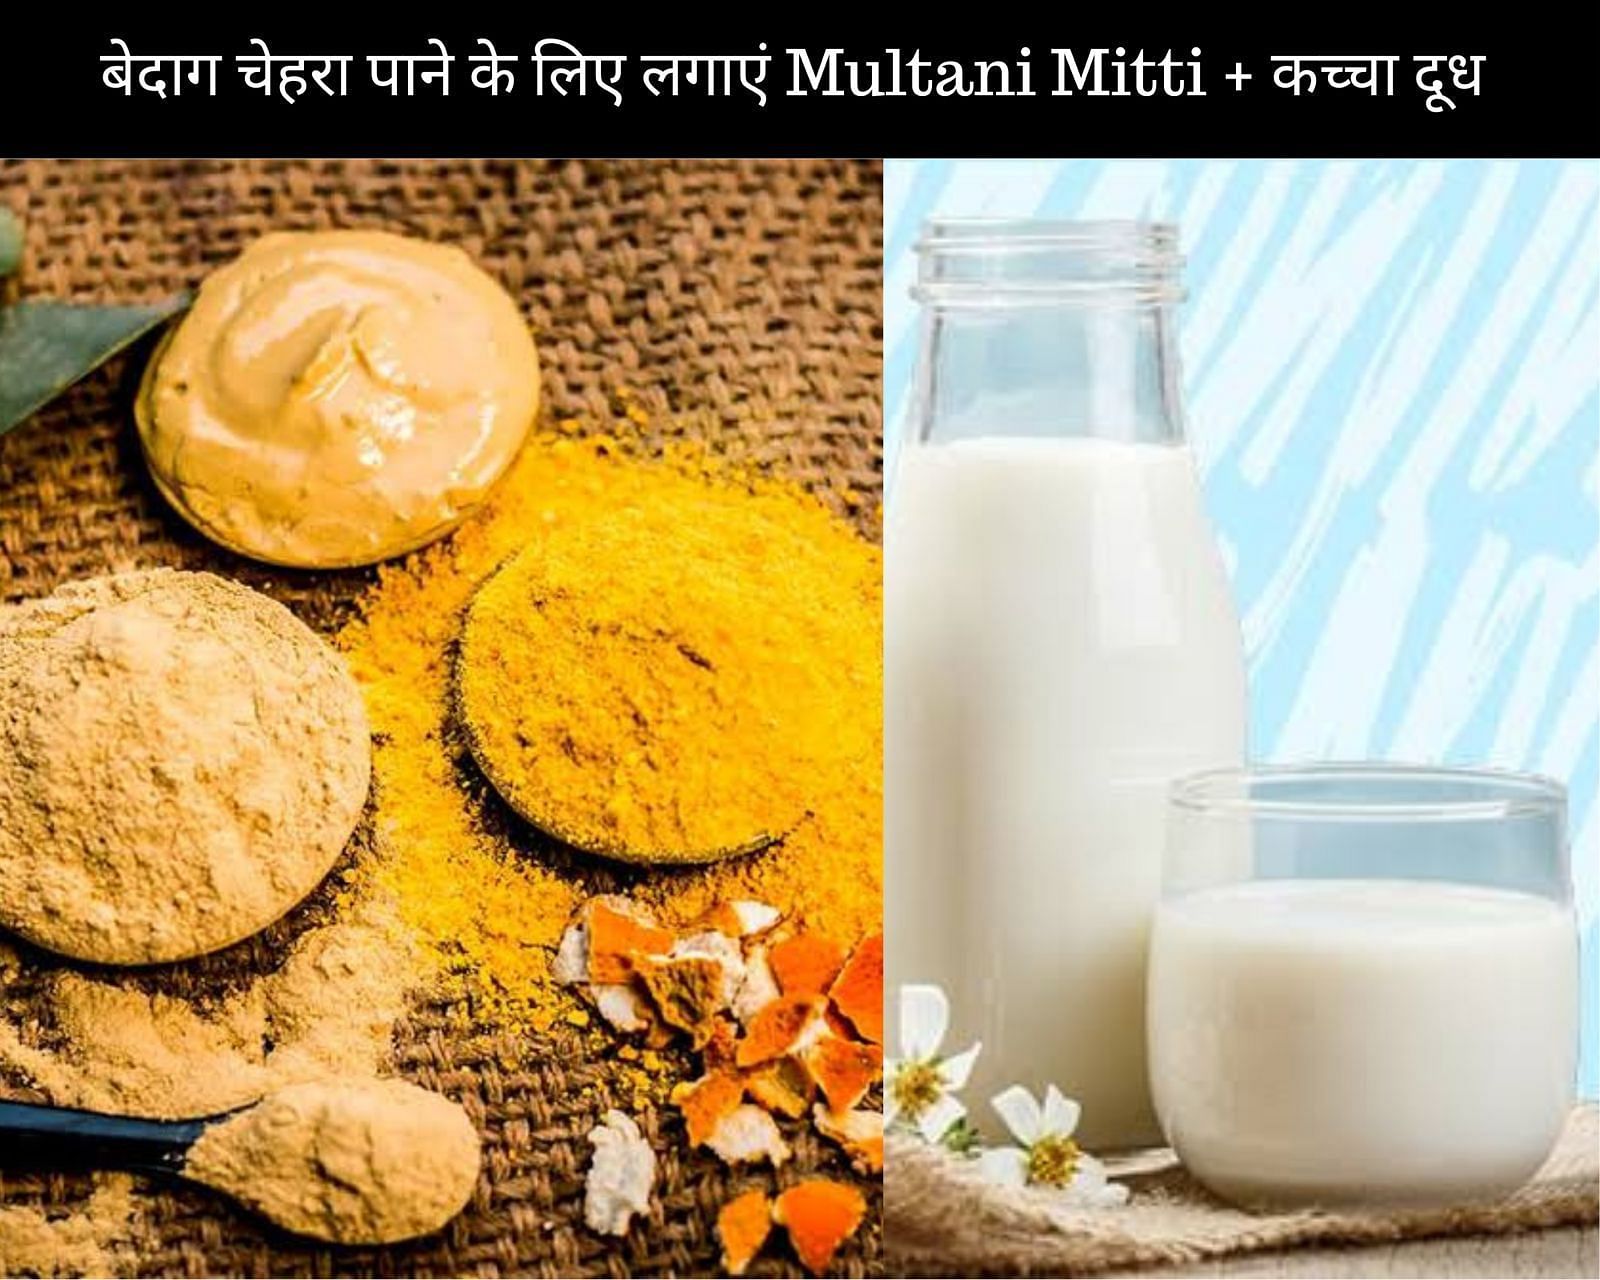 बेदाग चेहरा पाने के लिए लगाएं Multani Mitti + कच्चा दूध (फोटो - sportskeedaहिन्दी)